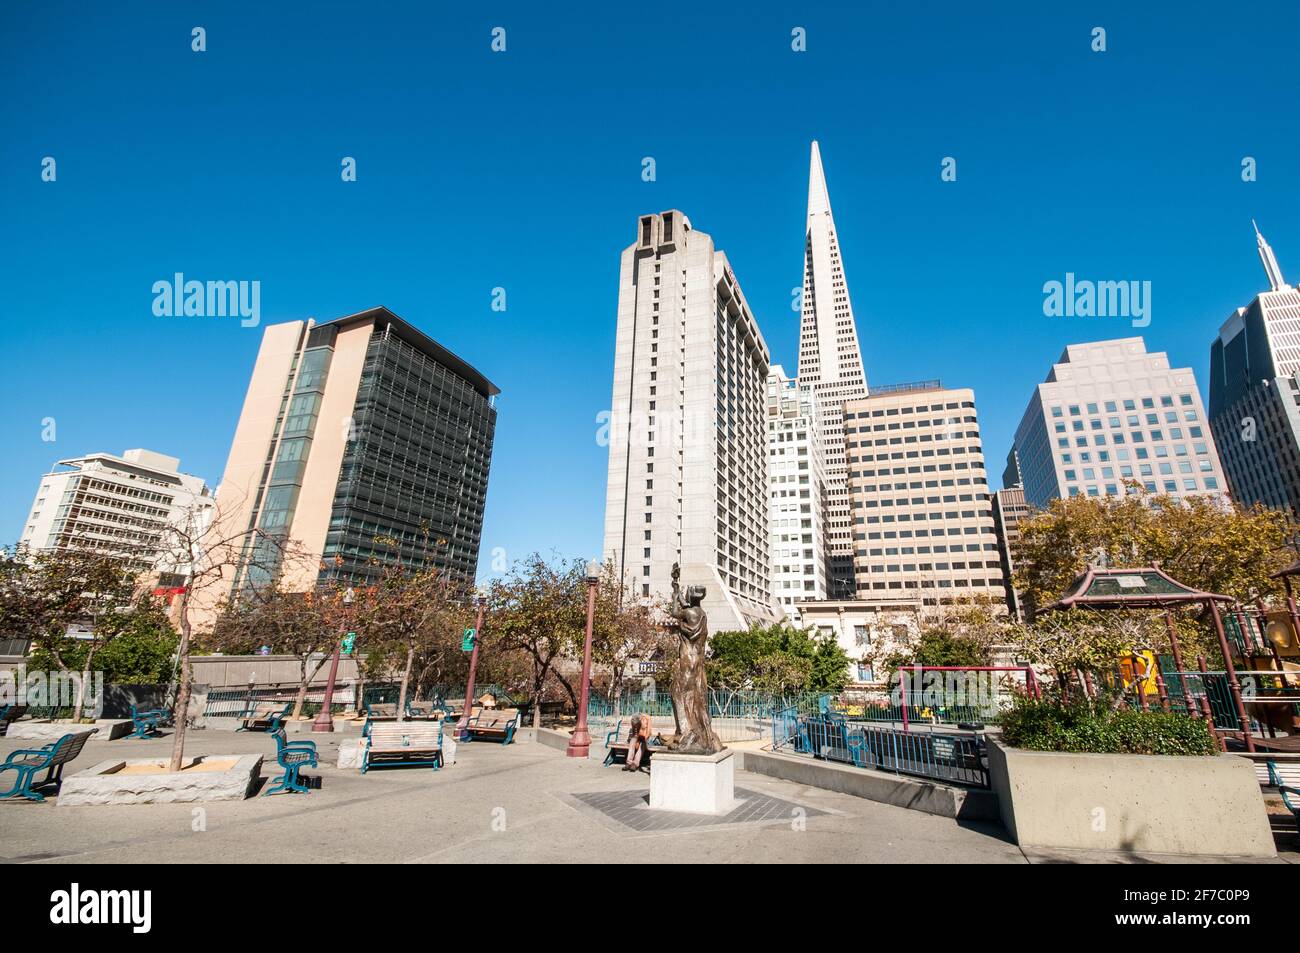 San Francisco è una città statunitense, la quarta in California per numero  di abitanti (dopo Los Angeles, San Diego e San Jose), con una popolazione  stimata di 884 363 abitanti nel 2017,